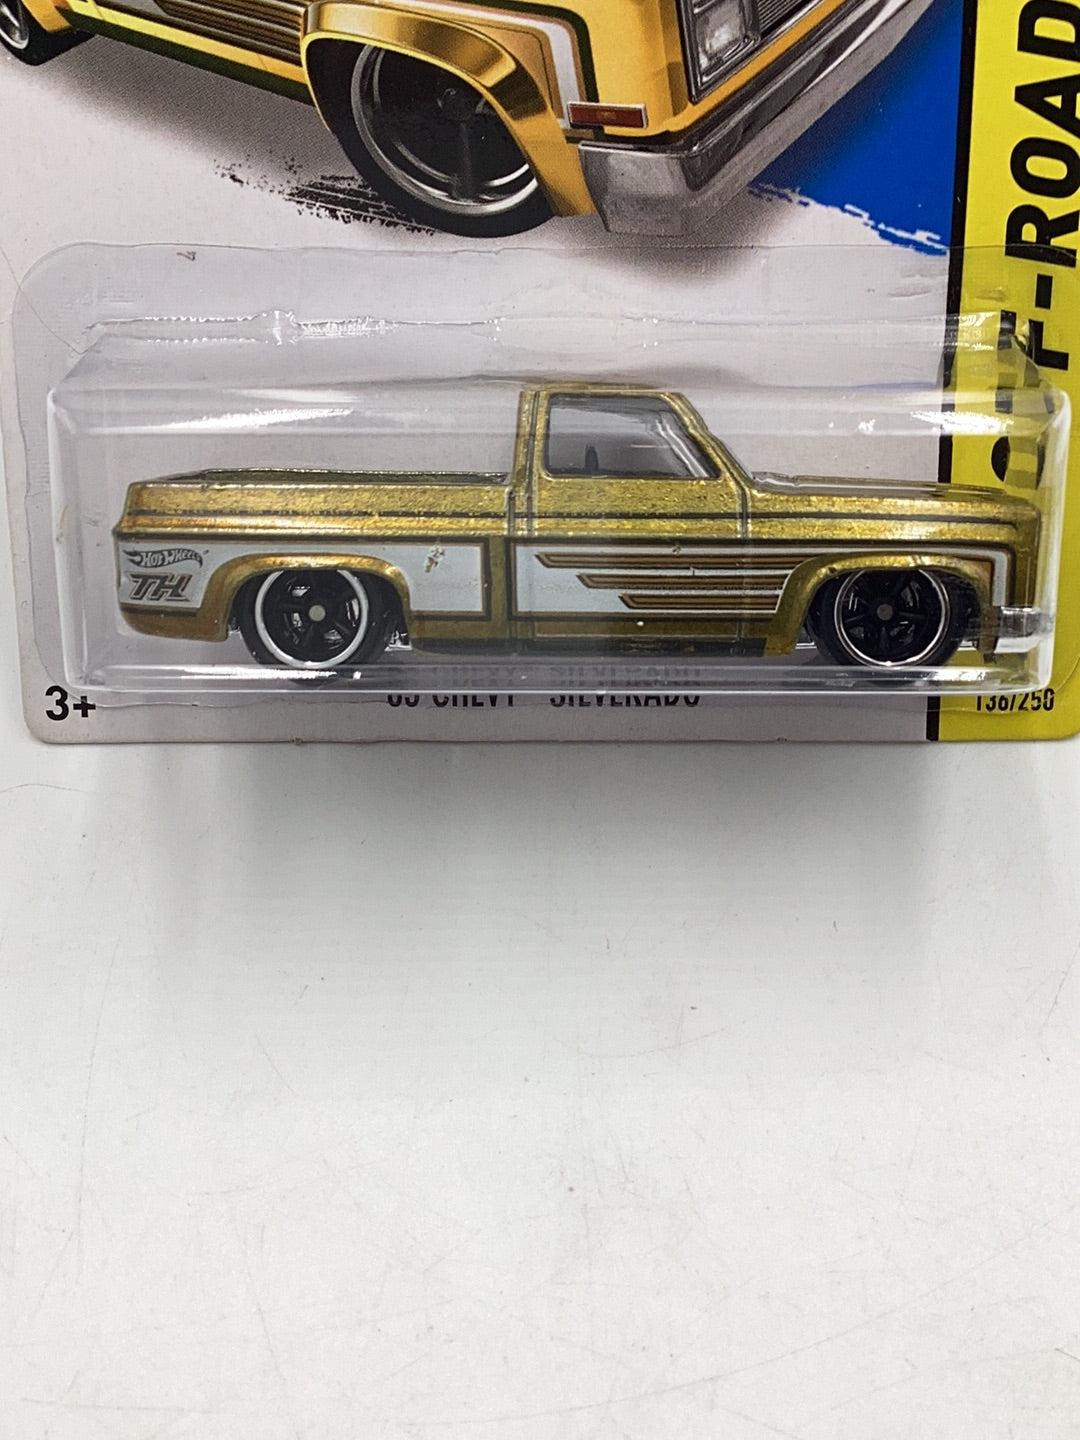 2014 hot wheels Super Treasure Hunt #136 83 Chevy Silverado with protector